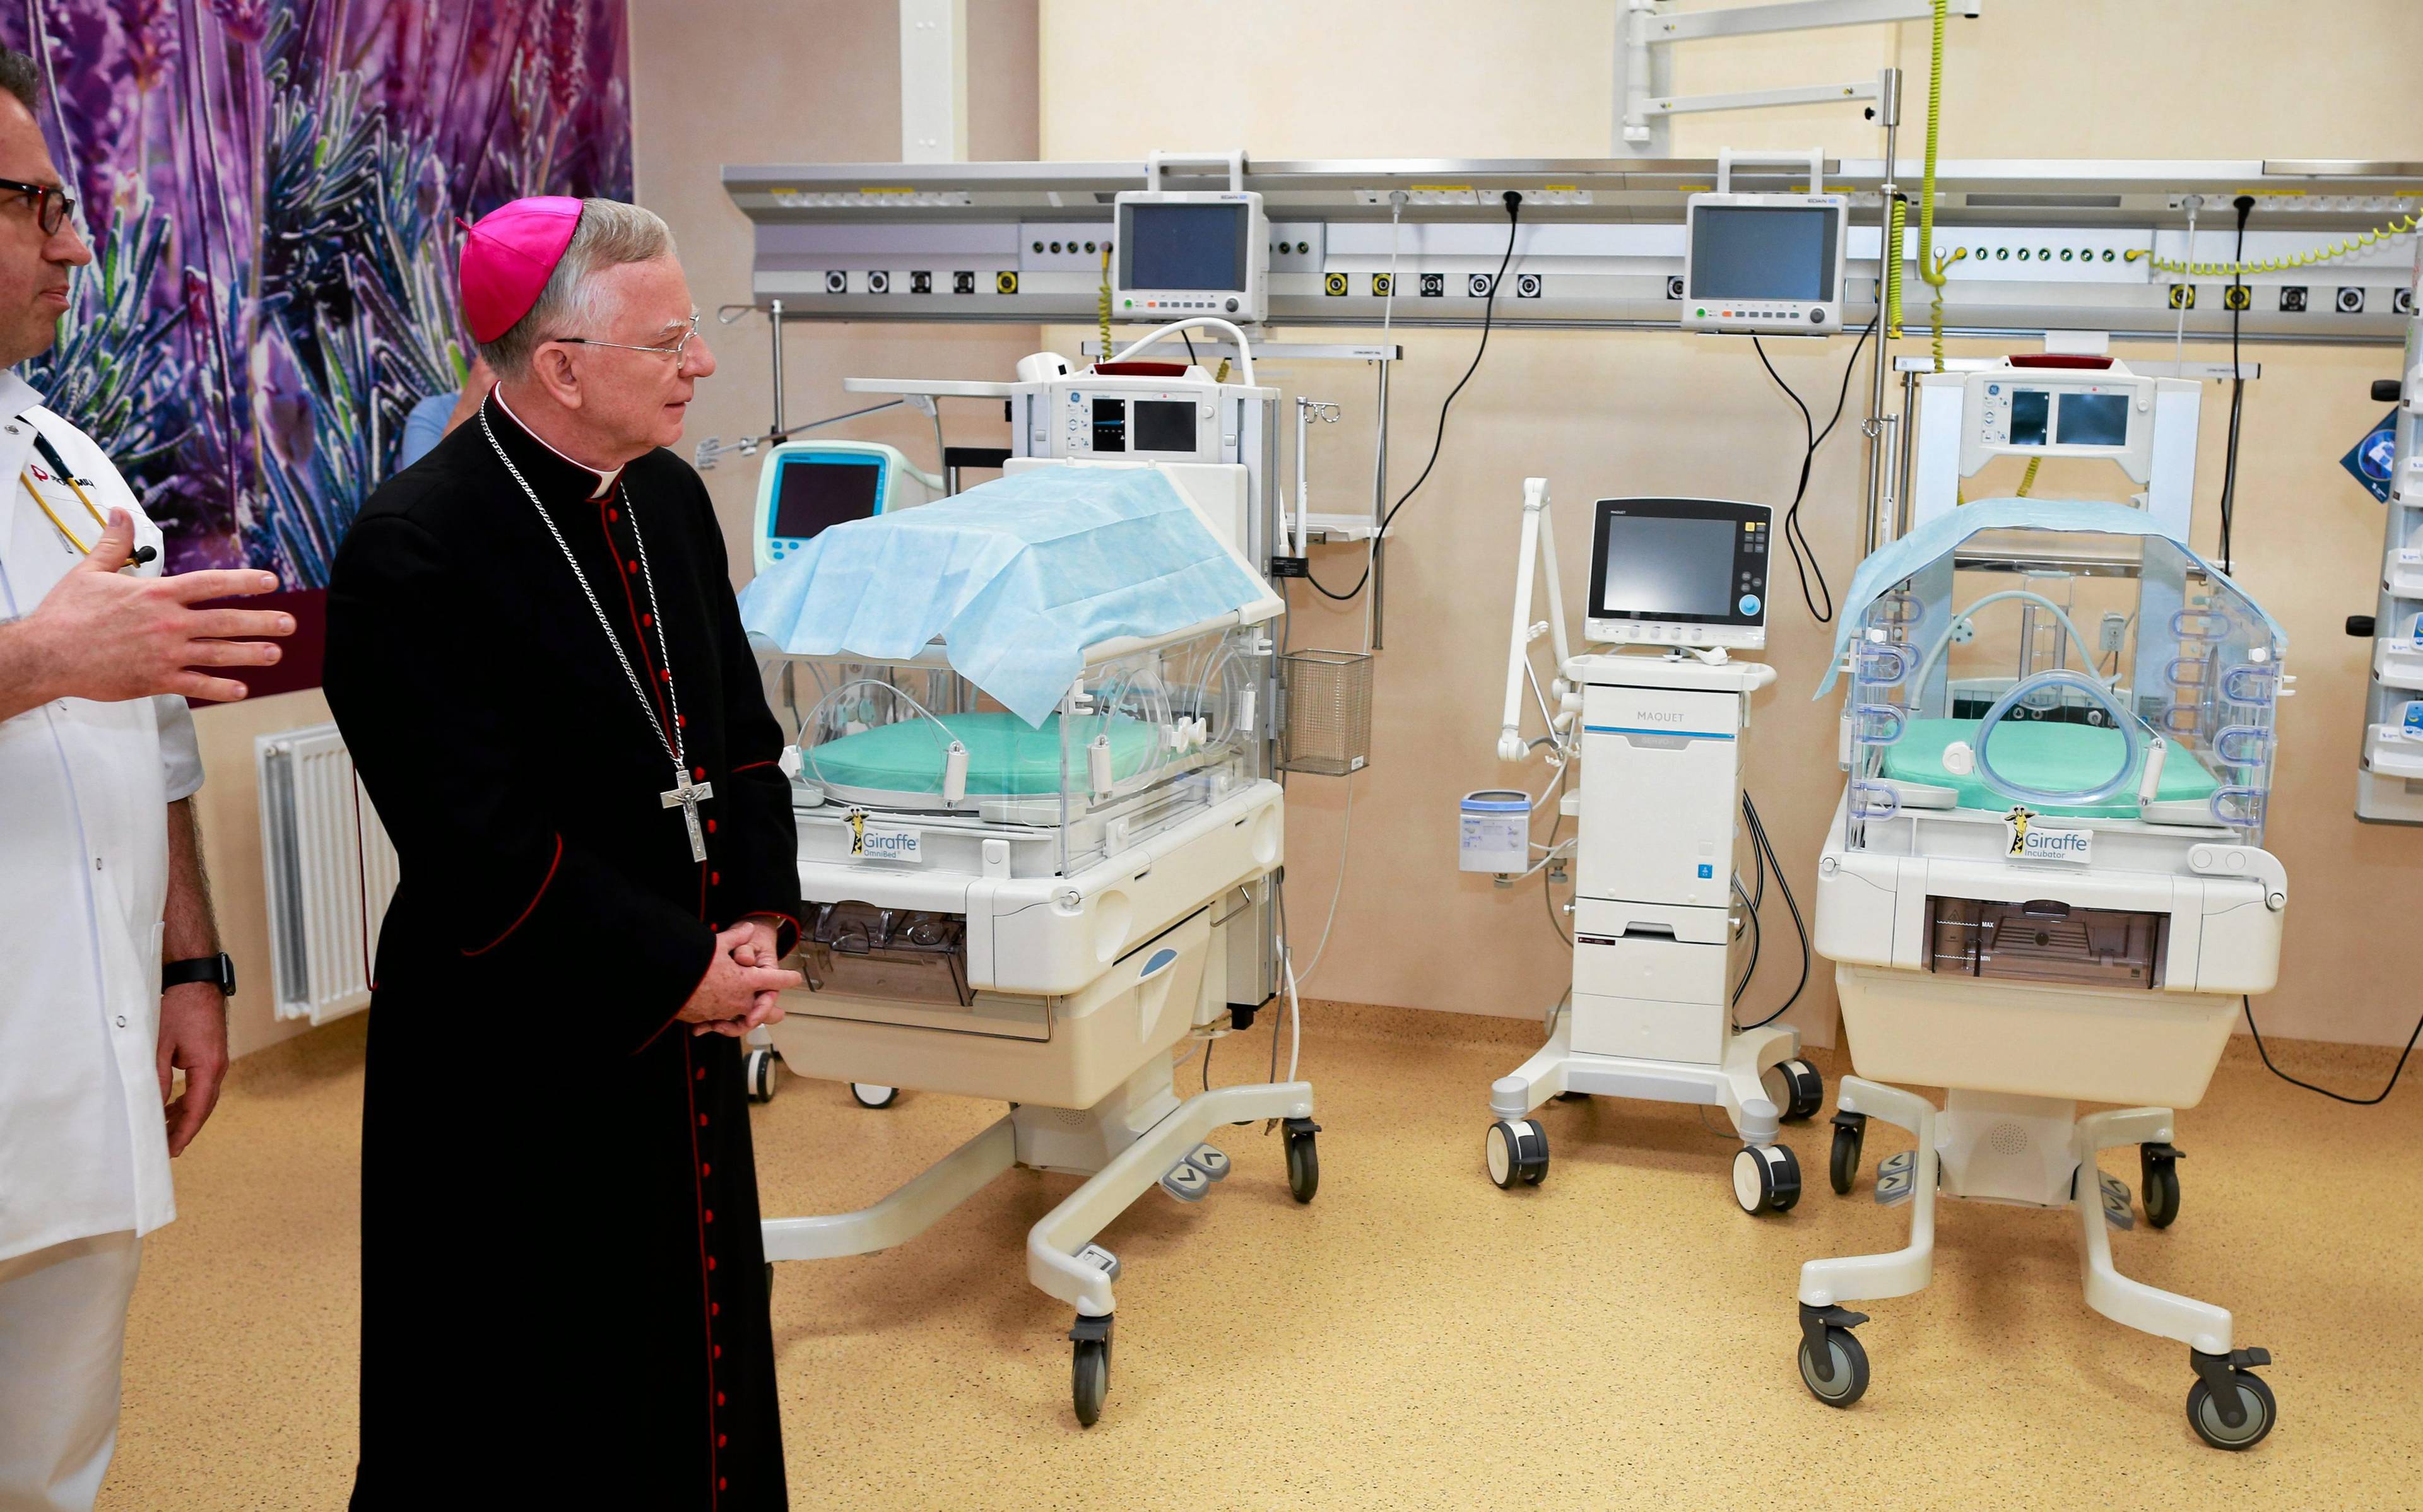 Biskup w sali szpitalnej z inkubatorami dla wcześniaków